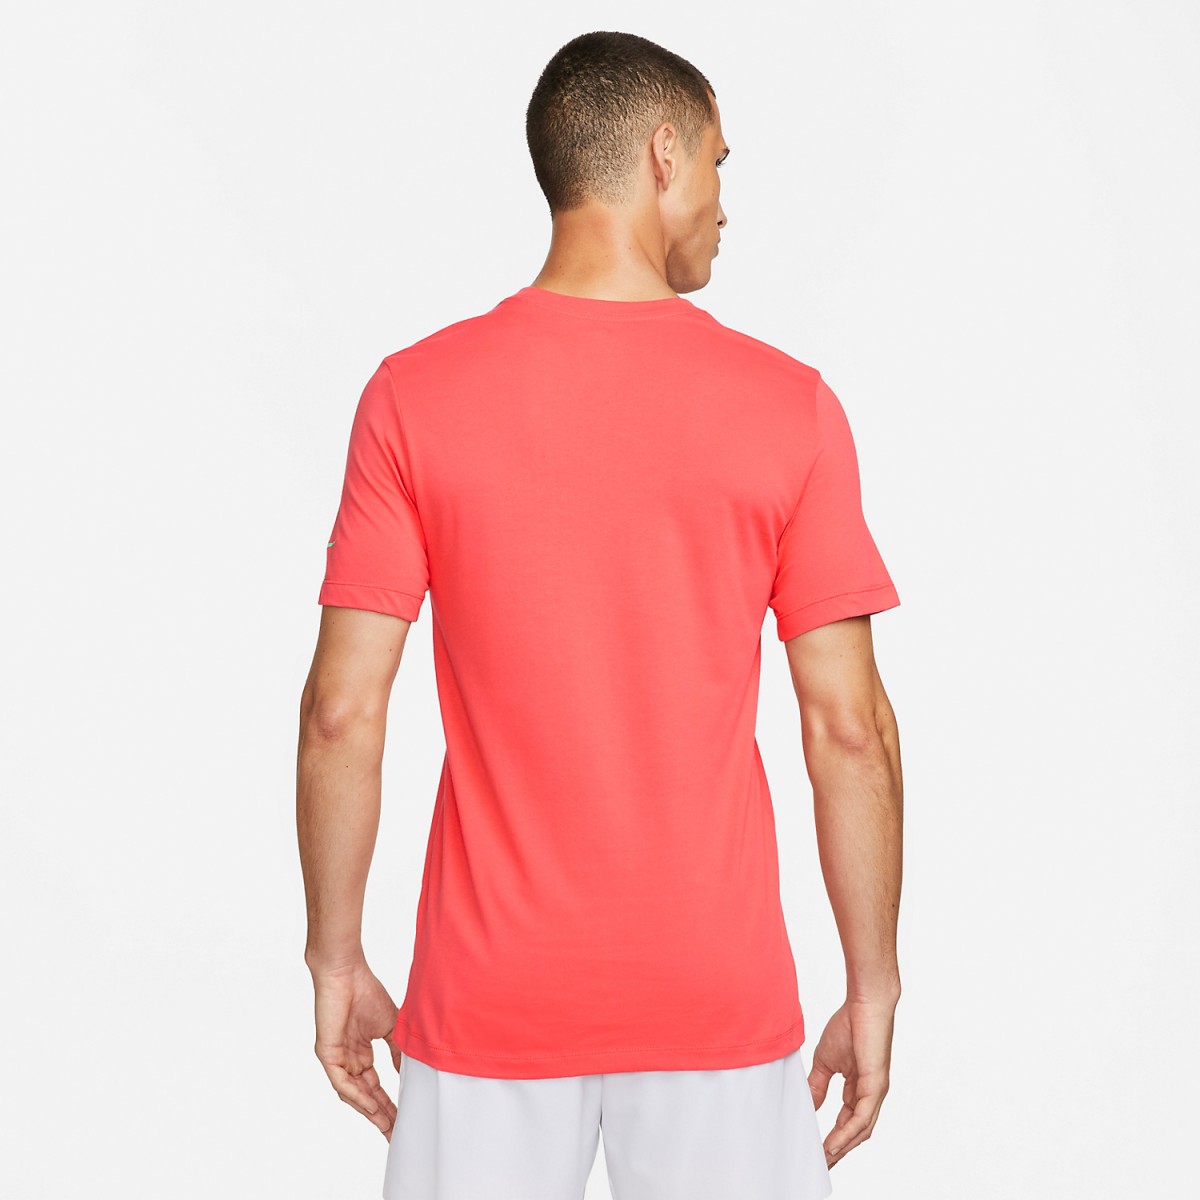 Теннисная футболка мужская Nike Rafa Tennis T-Shirt ember glow